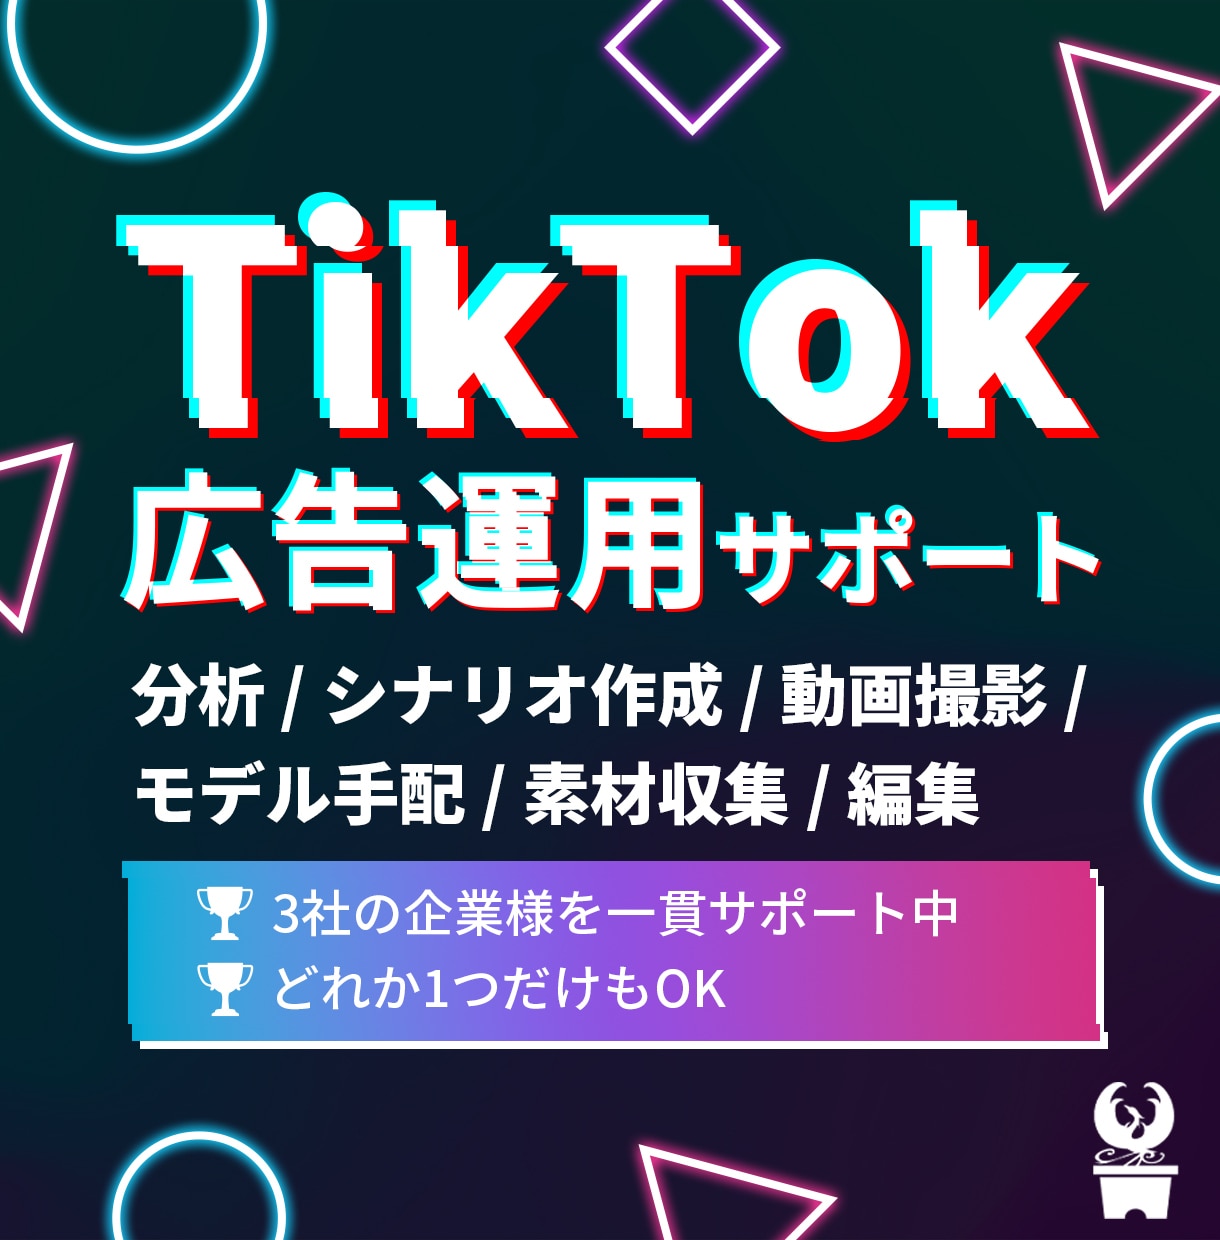 TikTok広告の運用を全サポートします 分析・シナリオ・撮影・素材収集・モデル手配・編集 イメージ1